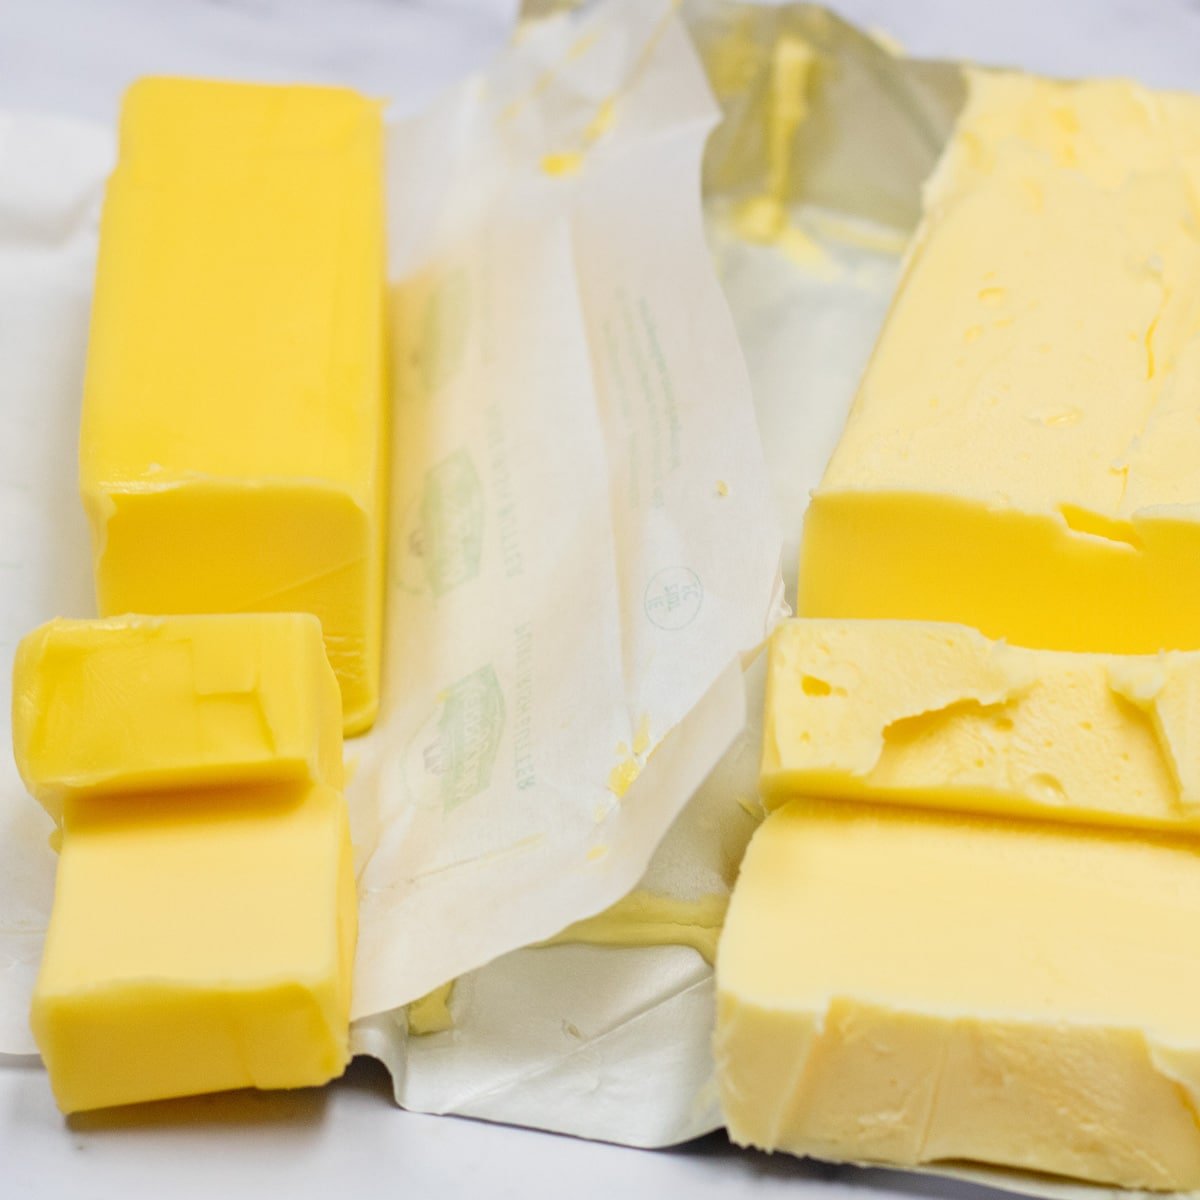 Imagem lado a lado da manteiga x gordura comparando embalagens abertas.